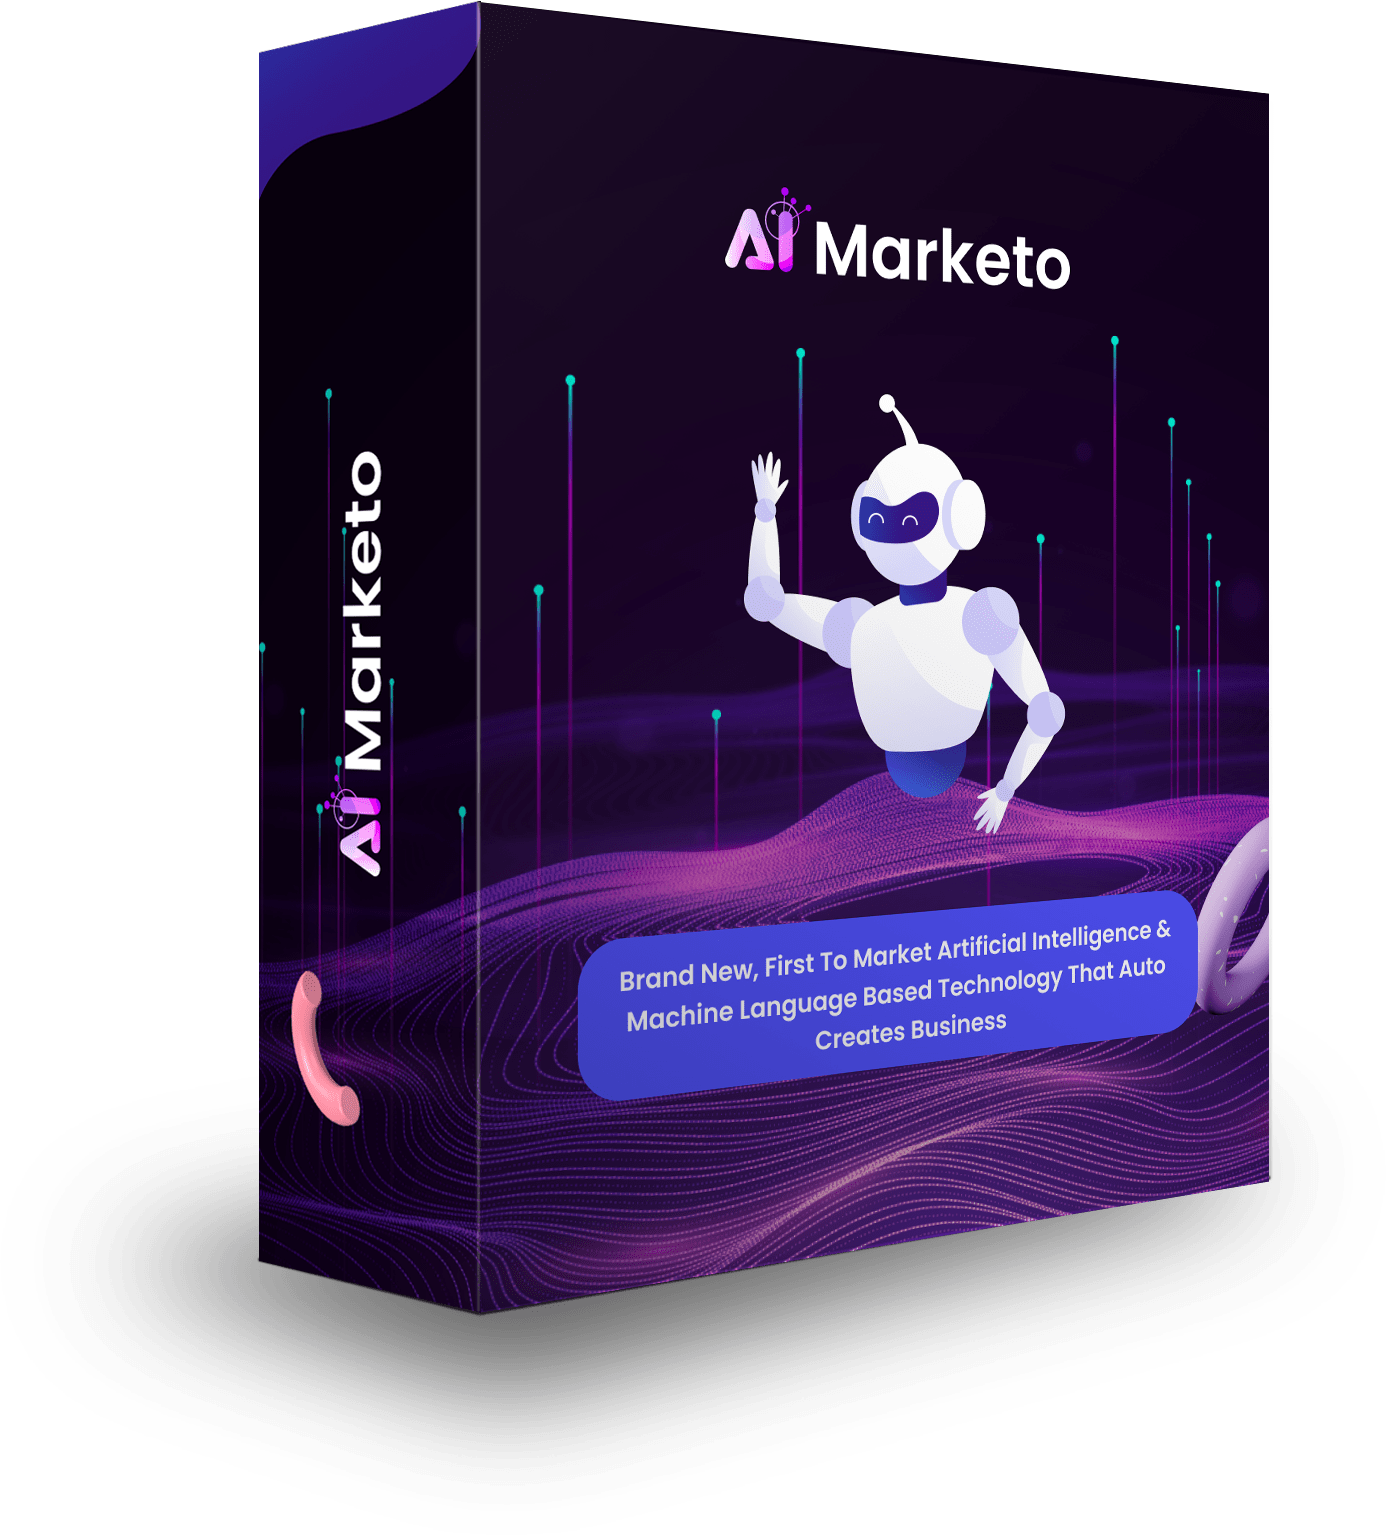 AI marketo